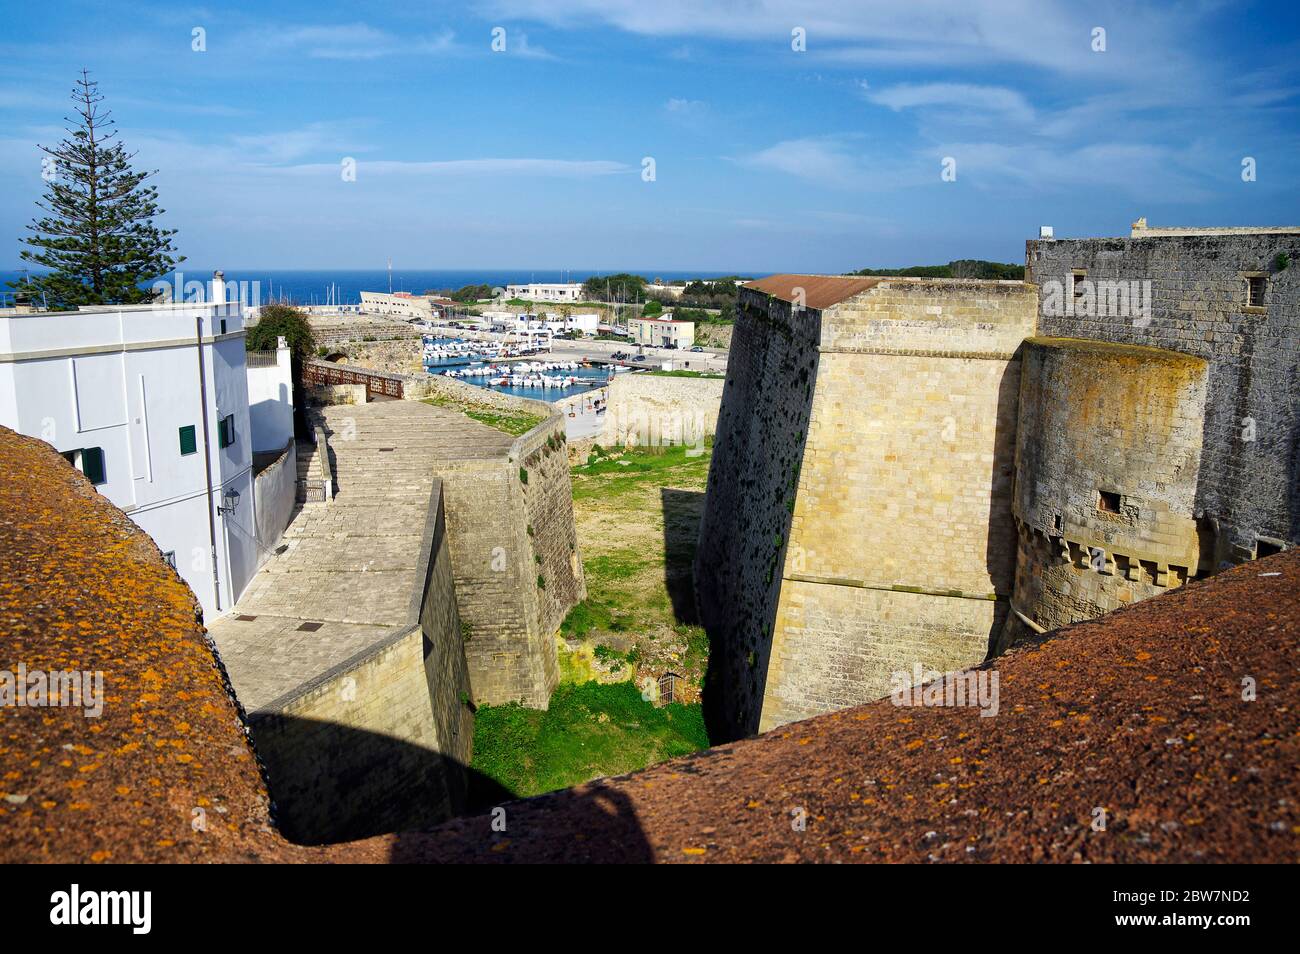 OTRANTE, APULIA, ITALIE - 30 MARS 2018 : une vue superbe sur la ville d'Otrante depuis les murs du château médiéval aragonais à Otrante, Apulia, Italie Banque D'Images